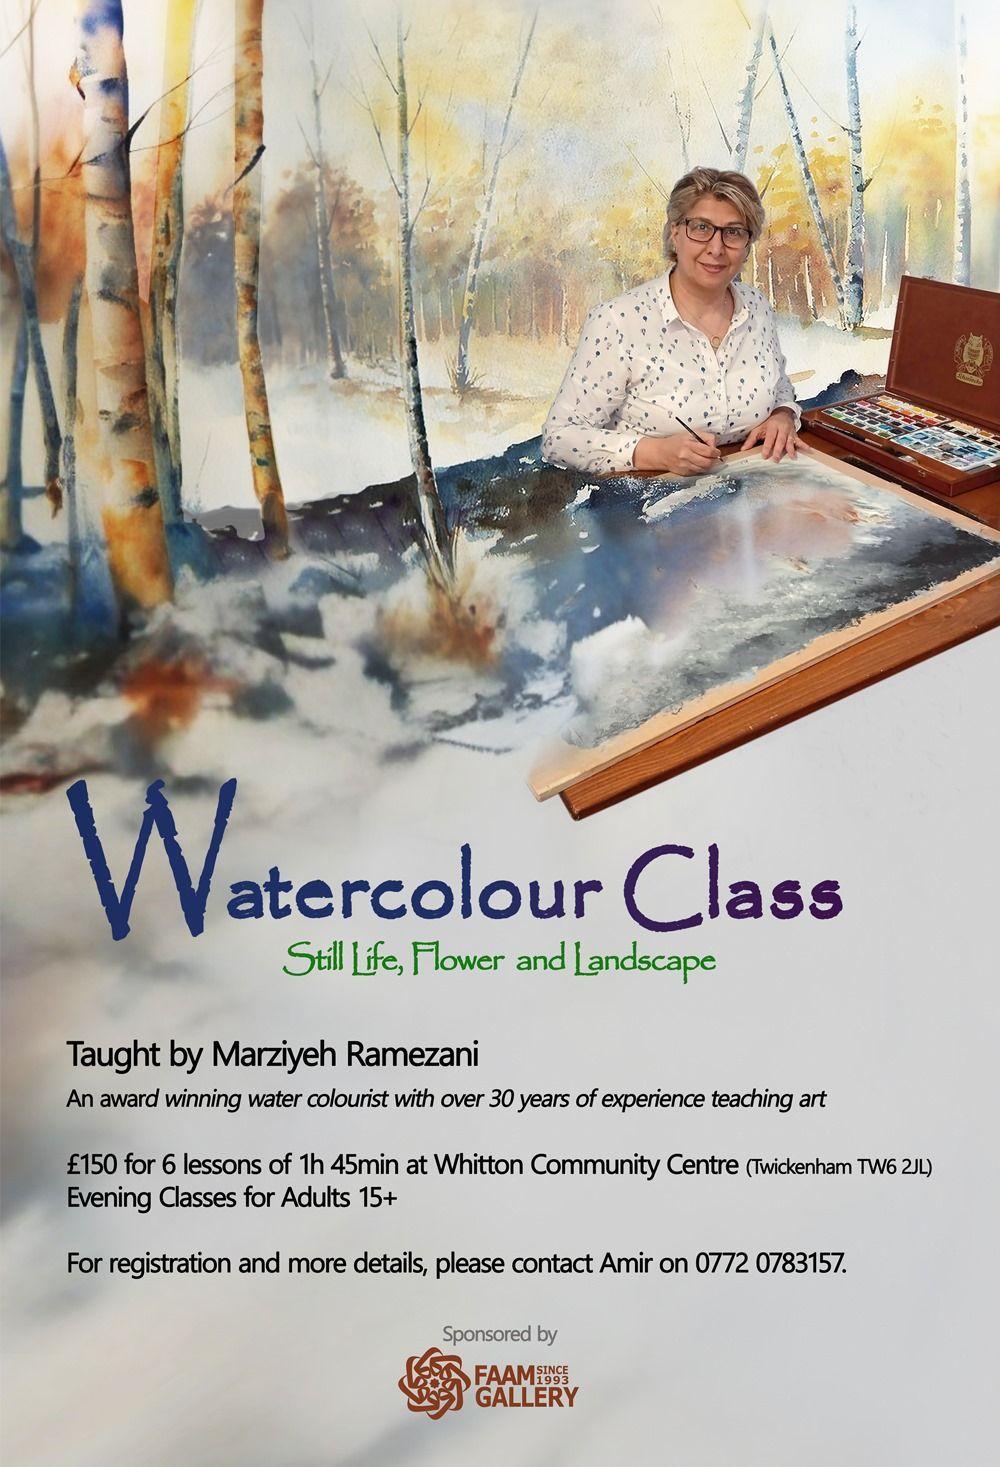 Watercolour Classes with Marziyeh  | Marziyeh Ramezani | Faam Gallery